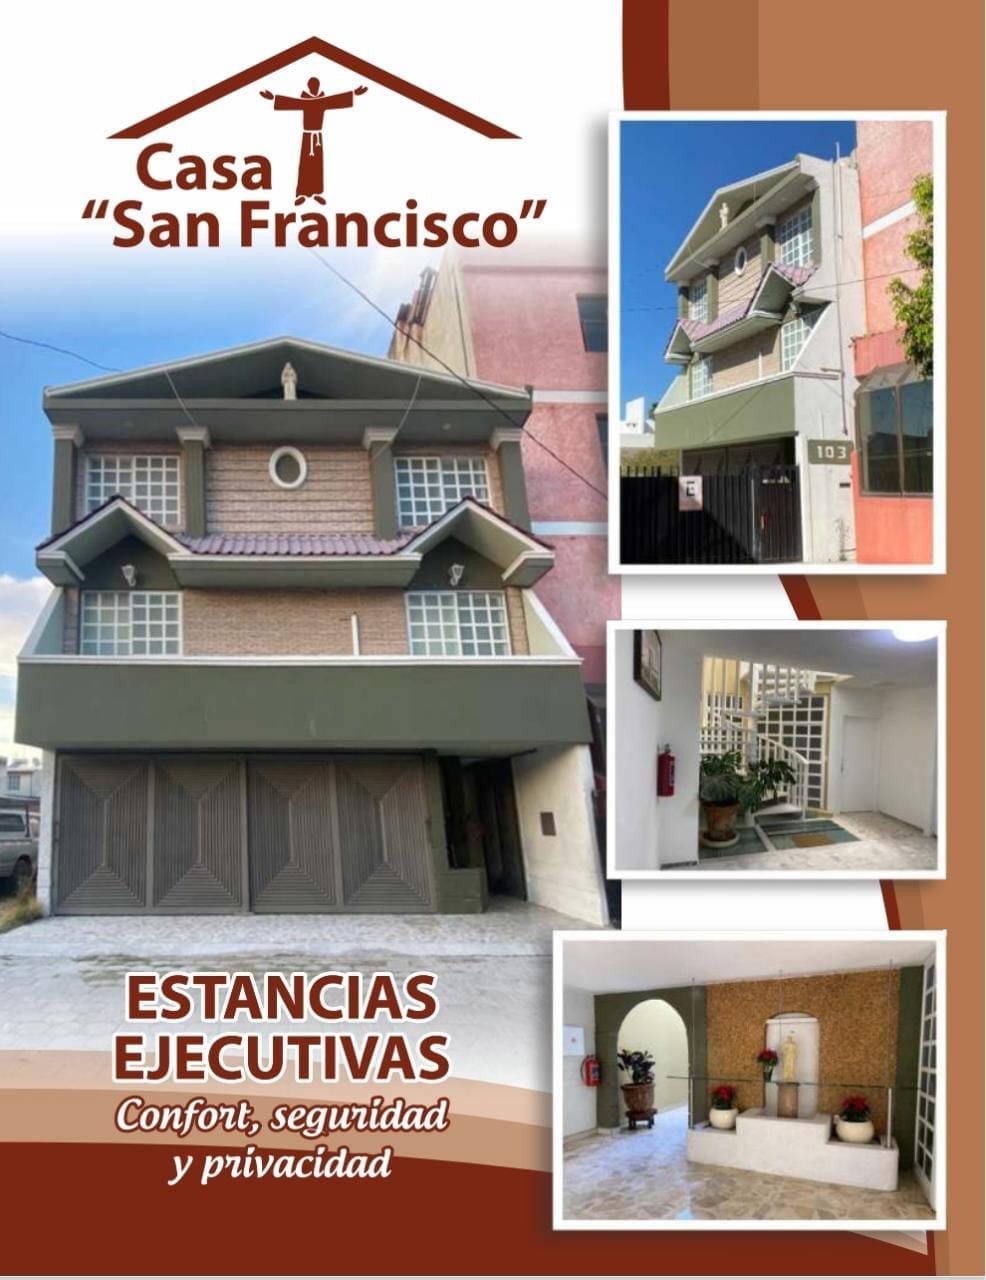 Estancia 1 Casa San Francisco